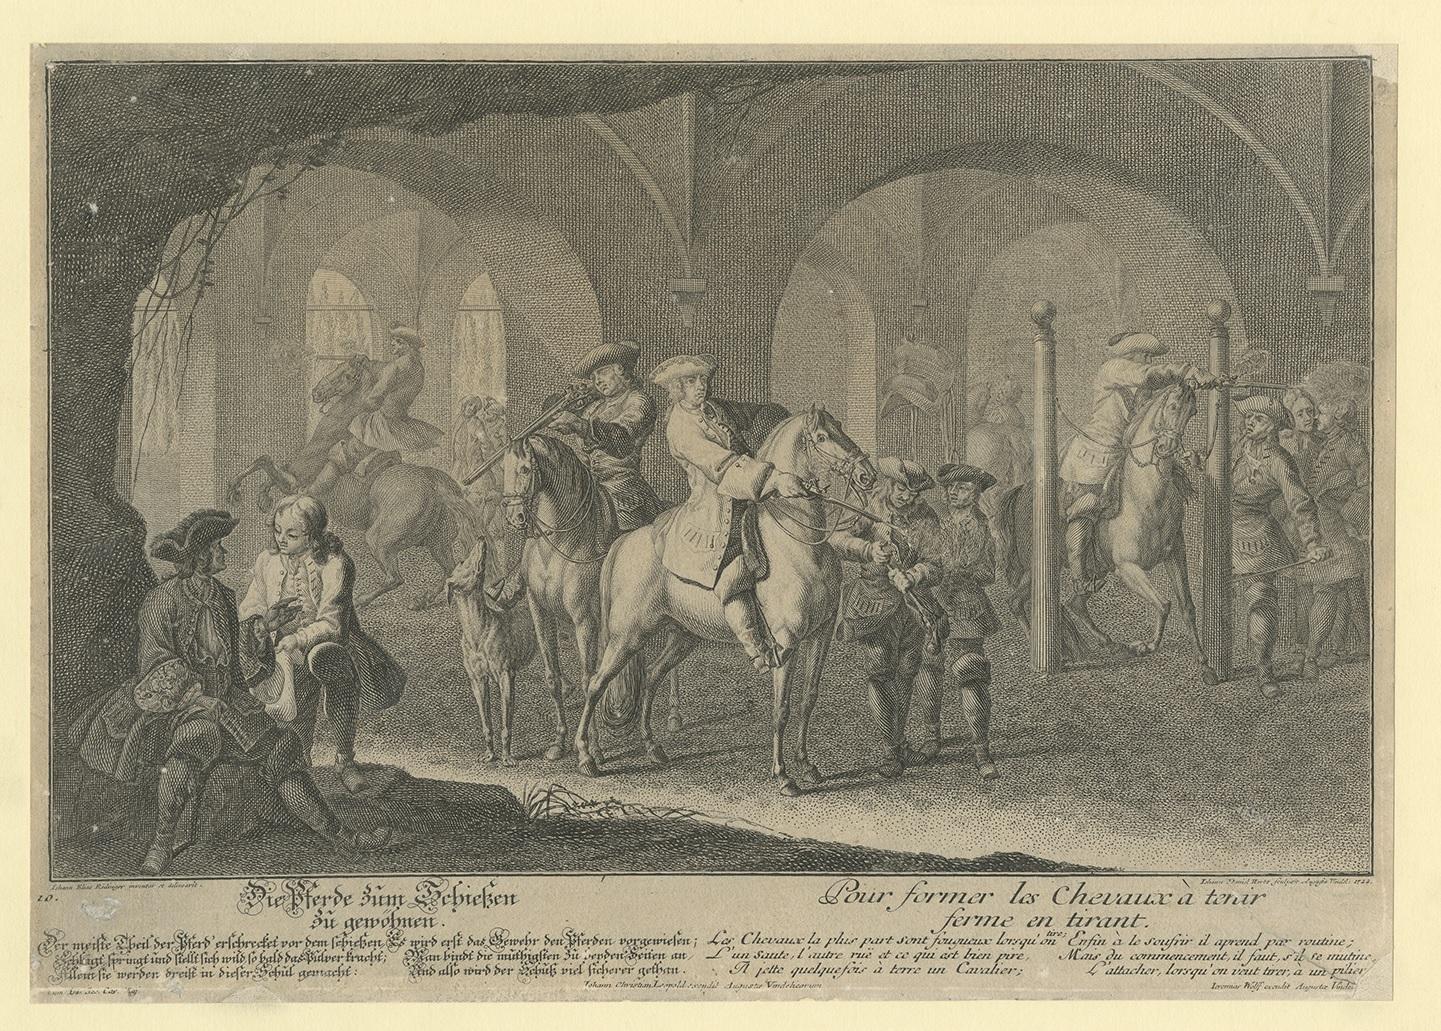 Antique print titled 'Die Pferde zum Schiessen zu gewöhnen - Pour former les Chevaux à tenir ferme en tirant'. This print originates from 'Neue Reit-Kunst' by J.E. Ridinger.